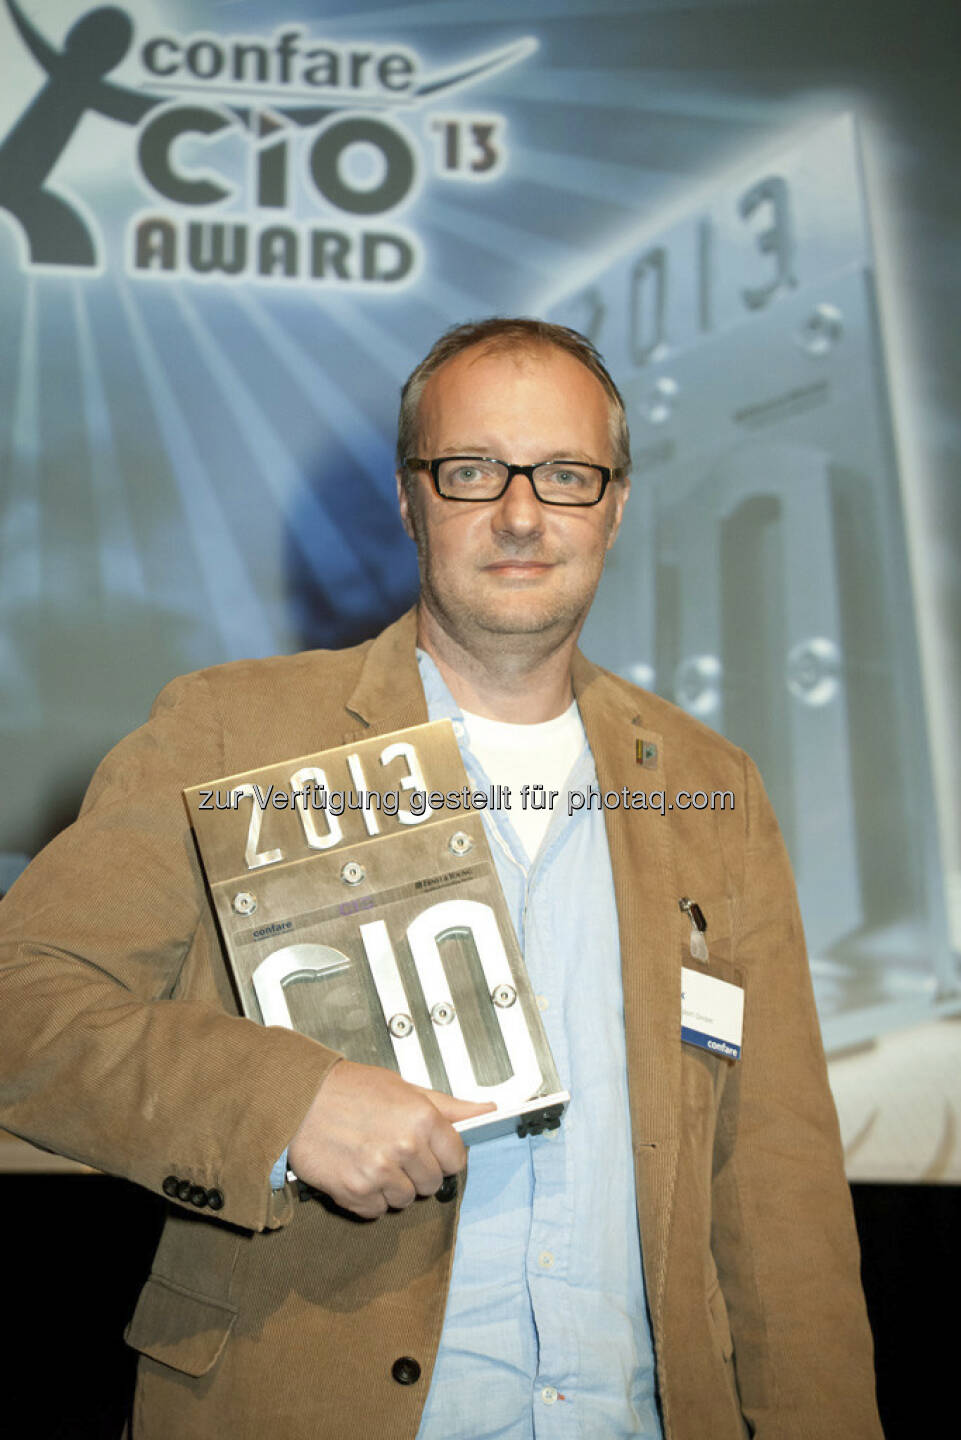 Eric-Jan Kaak (Gewinner des CIO Awards, Blizzard)